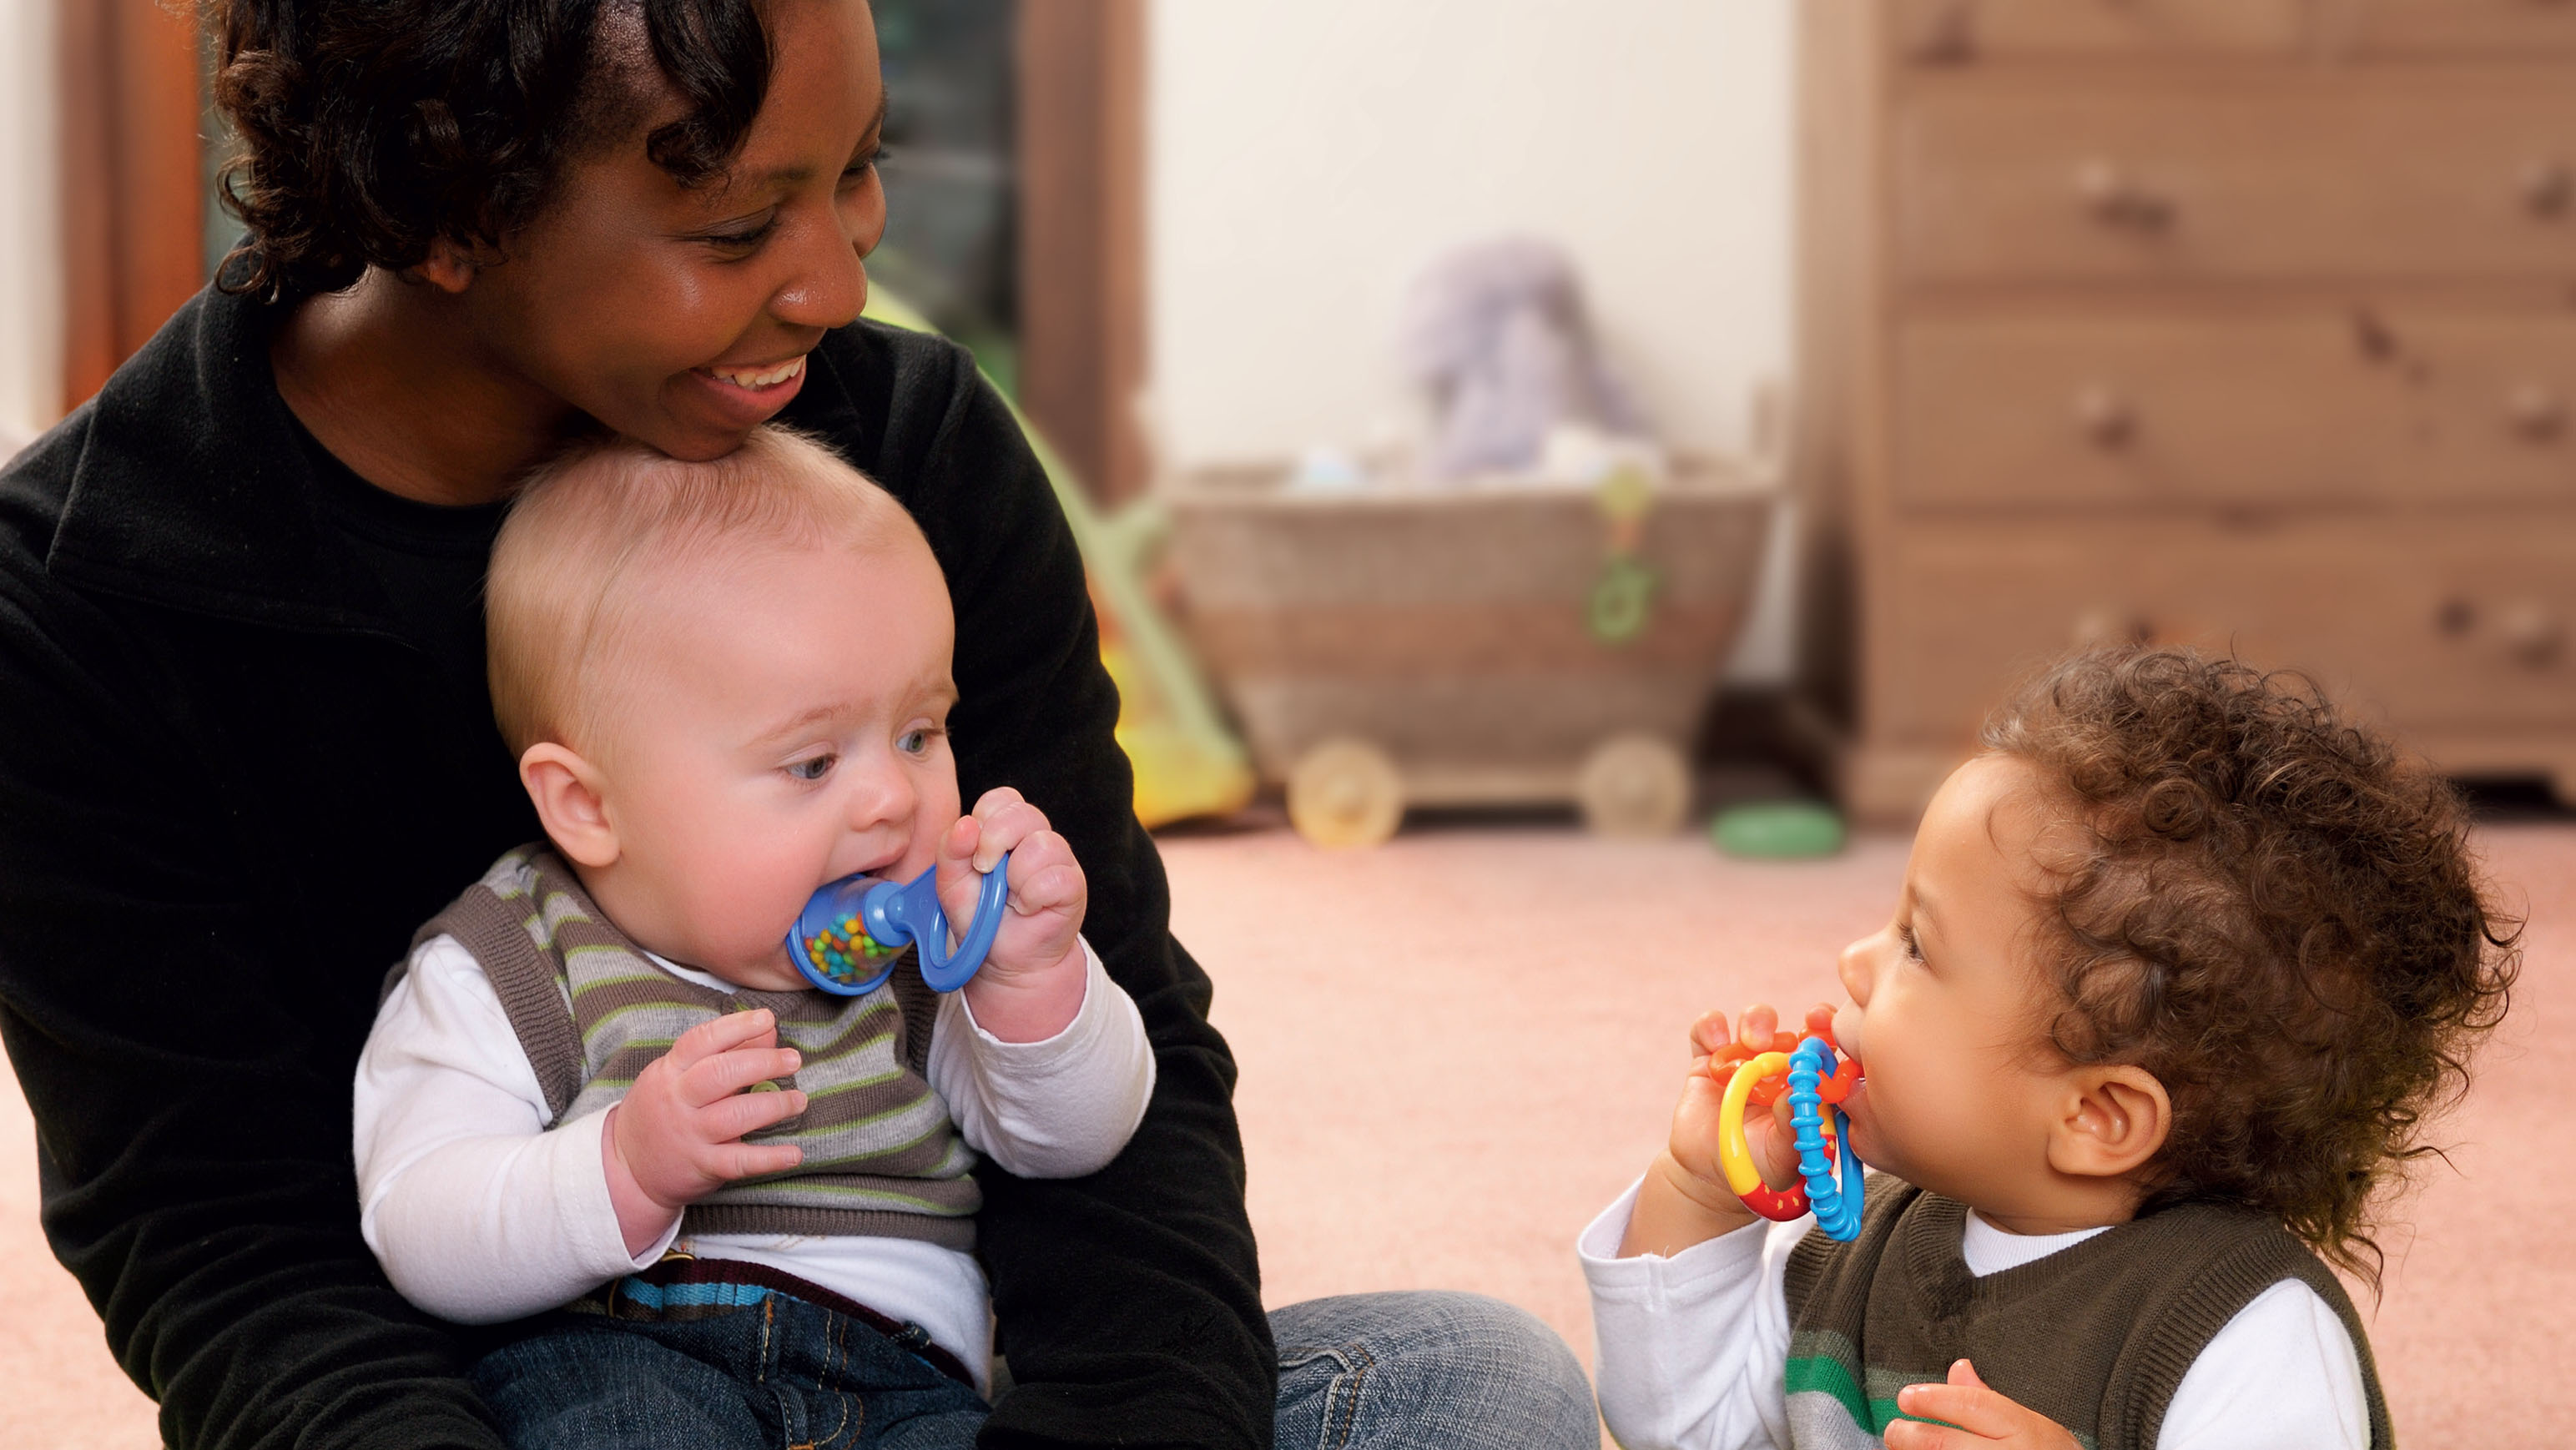 Eine Frau mit einem Baby auf dem Schoß und einem kleinen Kind vor sich sitzen, beide Kinder mit Spielzeug im Mund.